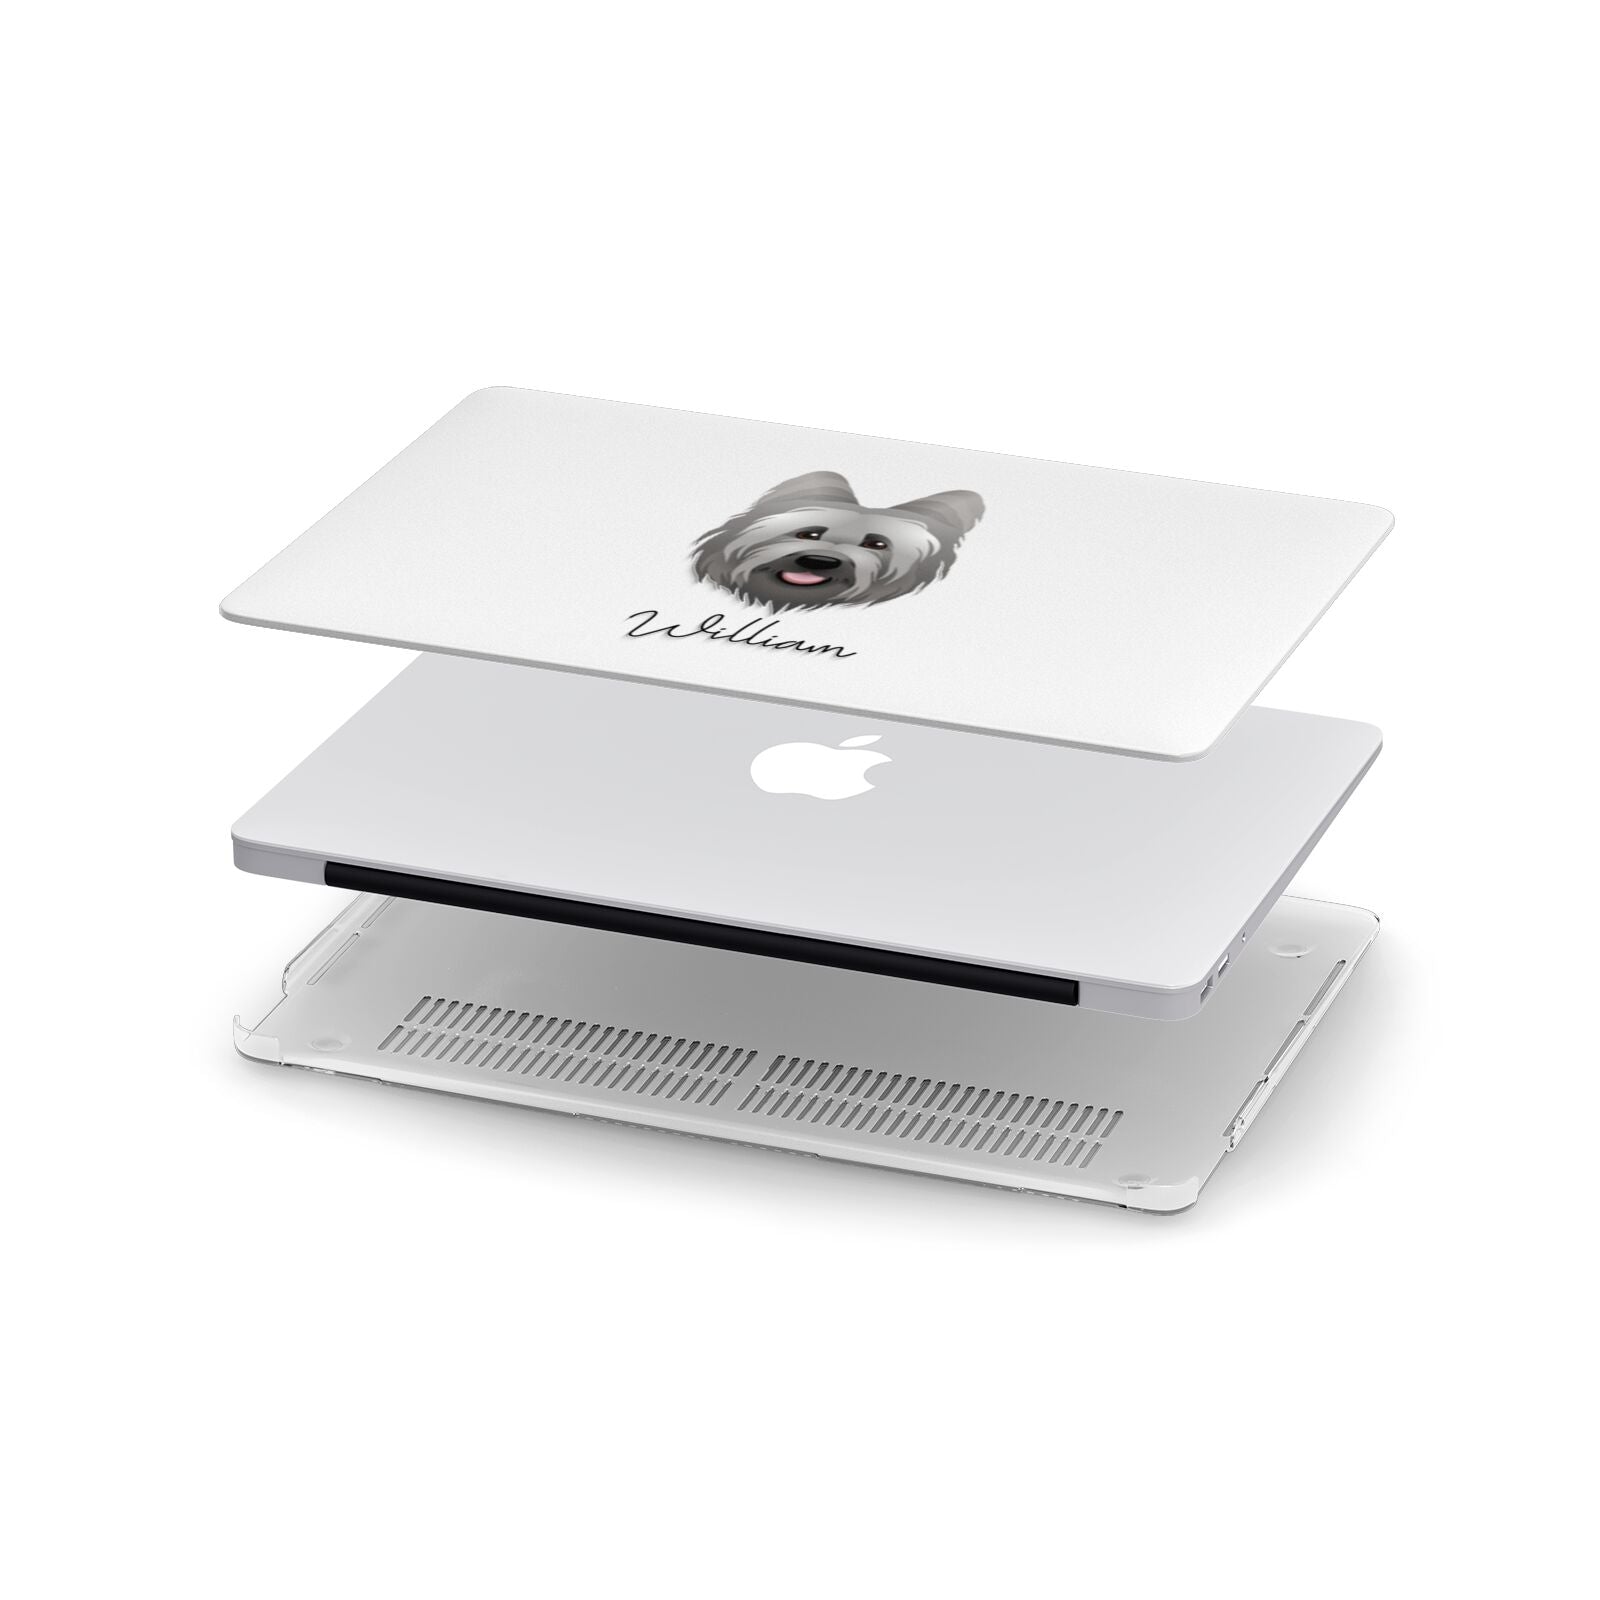 Briard Personalised Apple MacBook Case in Detail